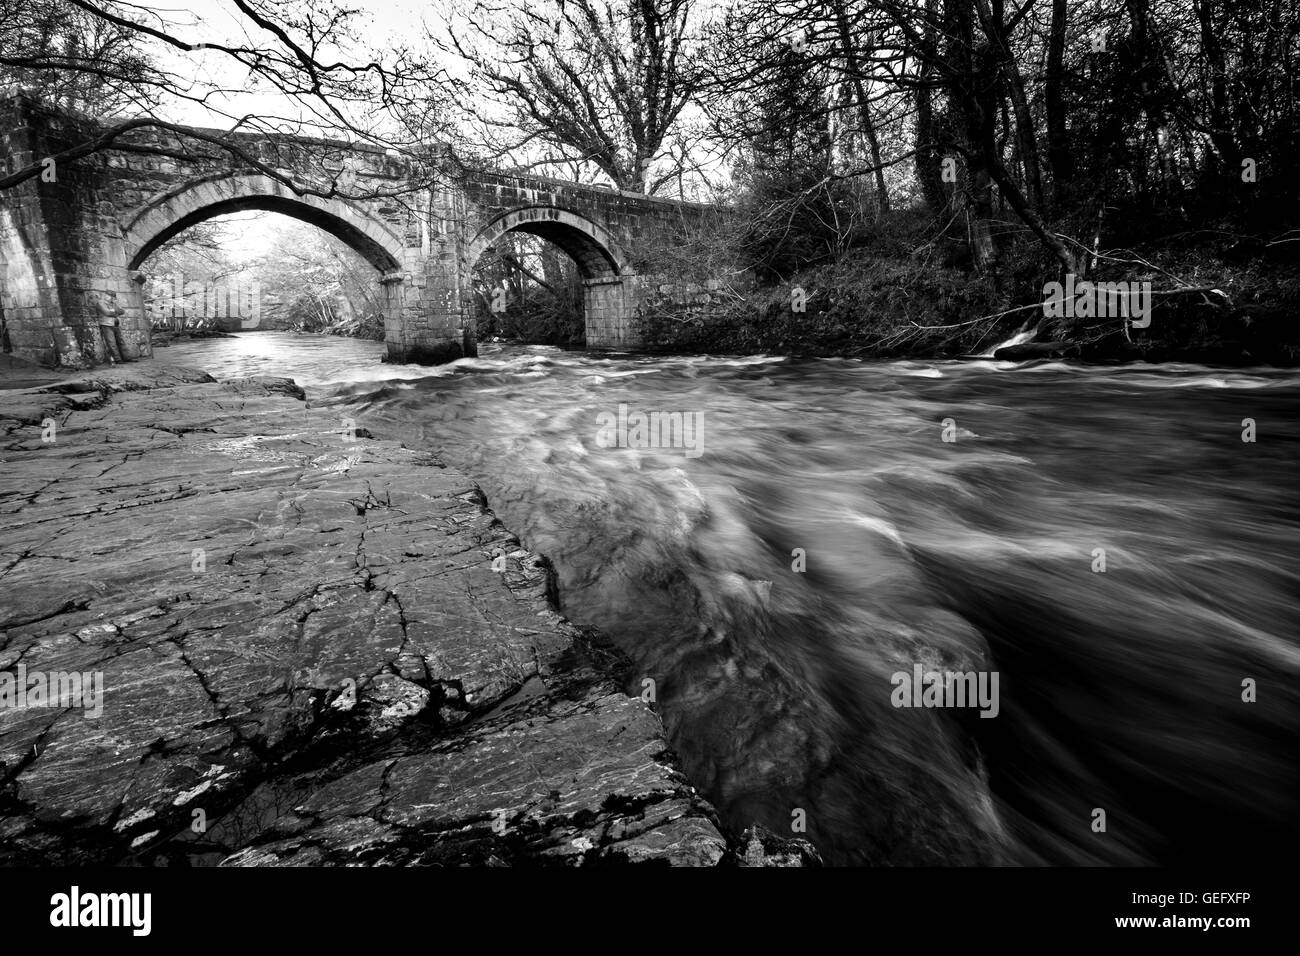 Das Wasser fließt unten ' He Steinbögen des "New Bridge" auf Dartmoor, Devon.  Ein Fischer lehnt sich an den Bogen vom Rand Wassers. Stockfoto